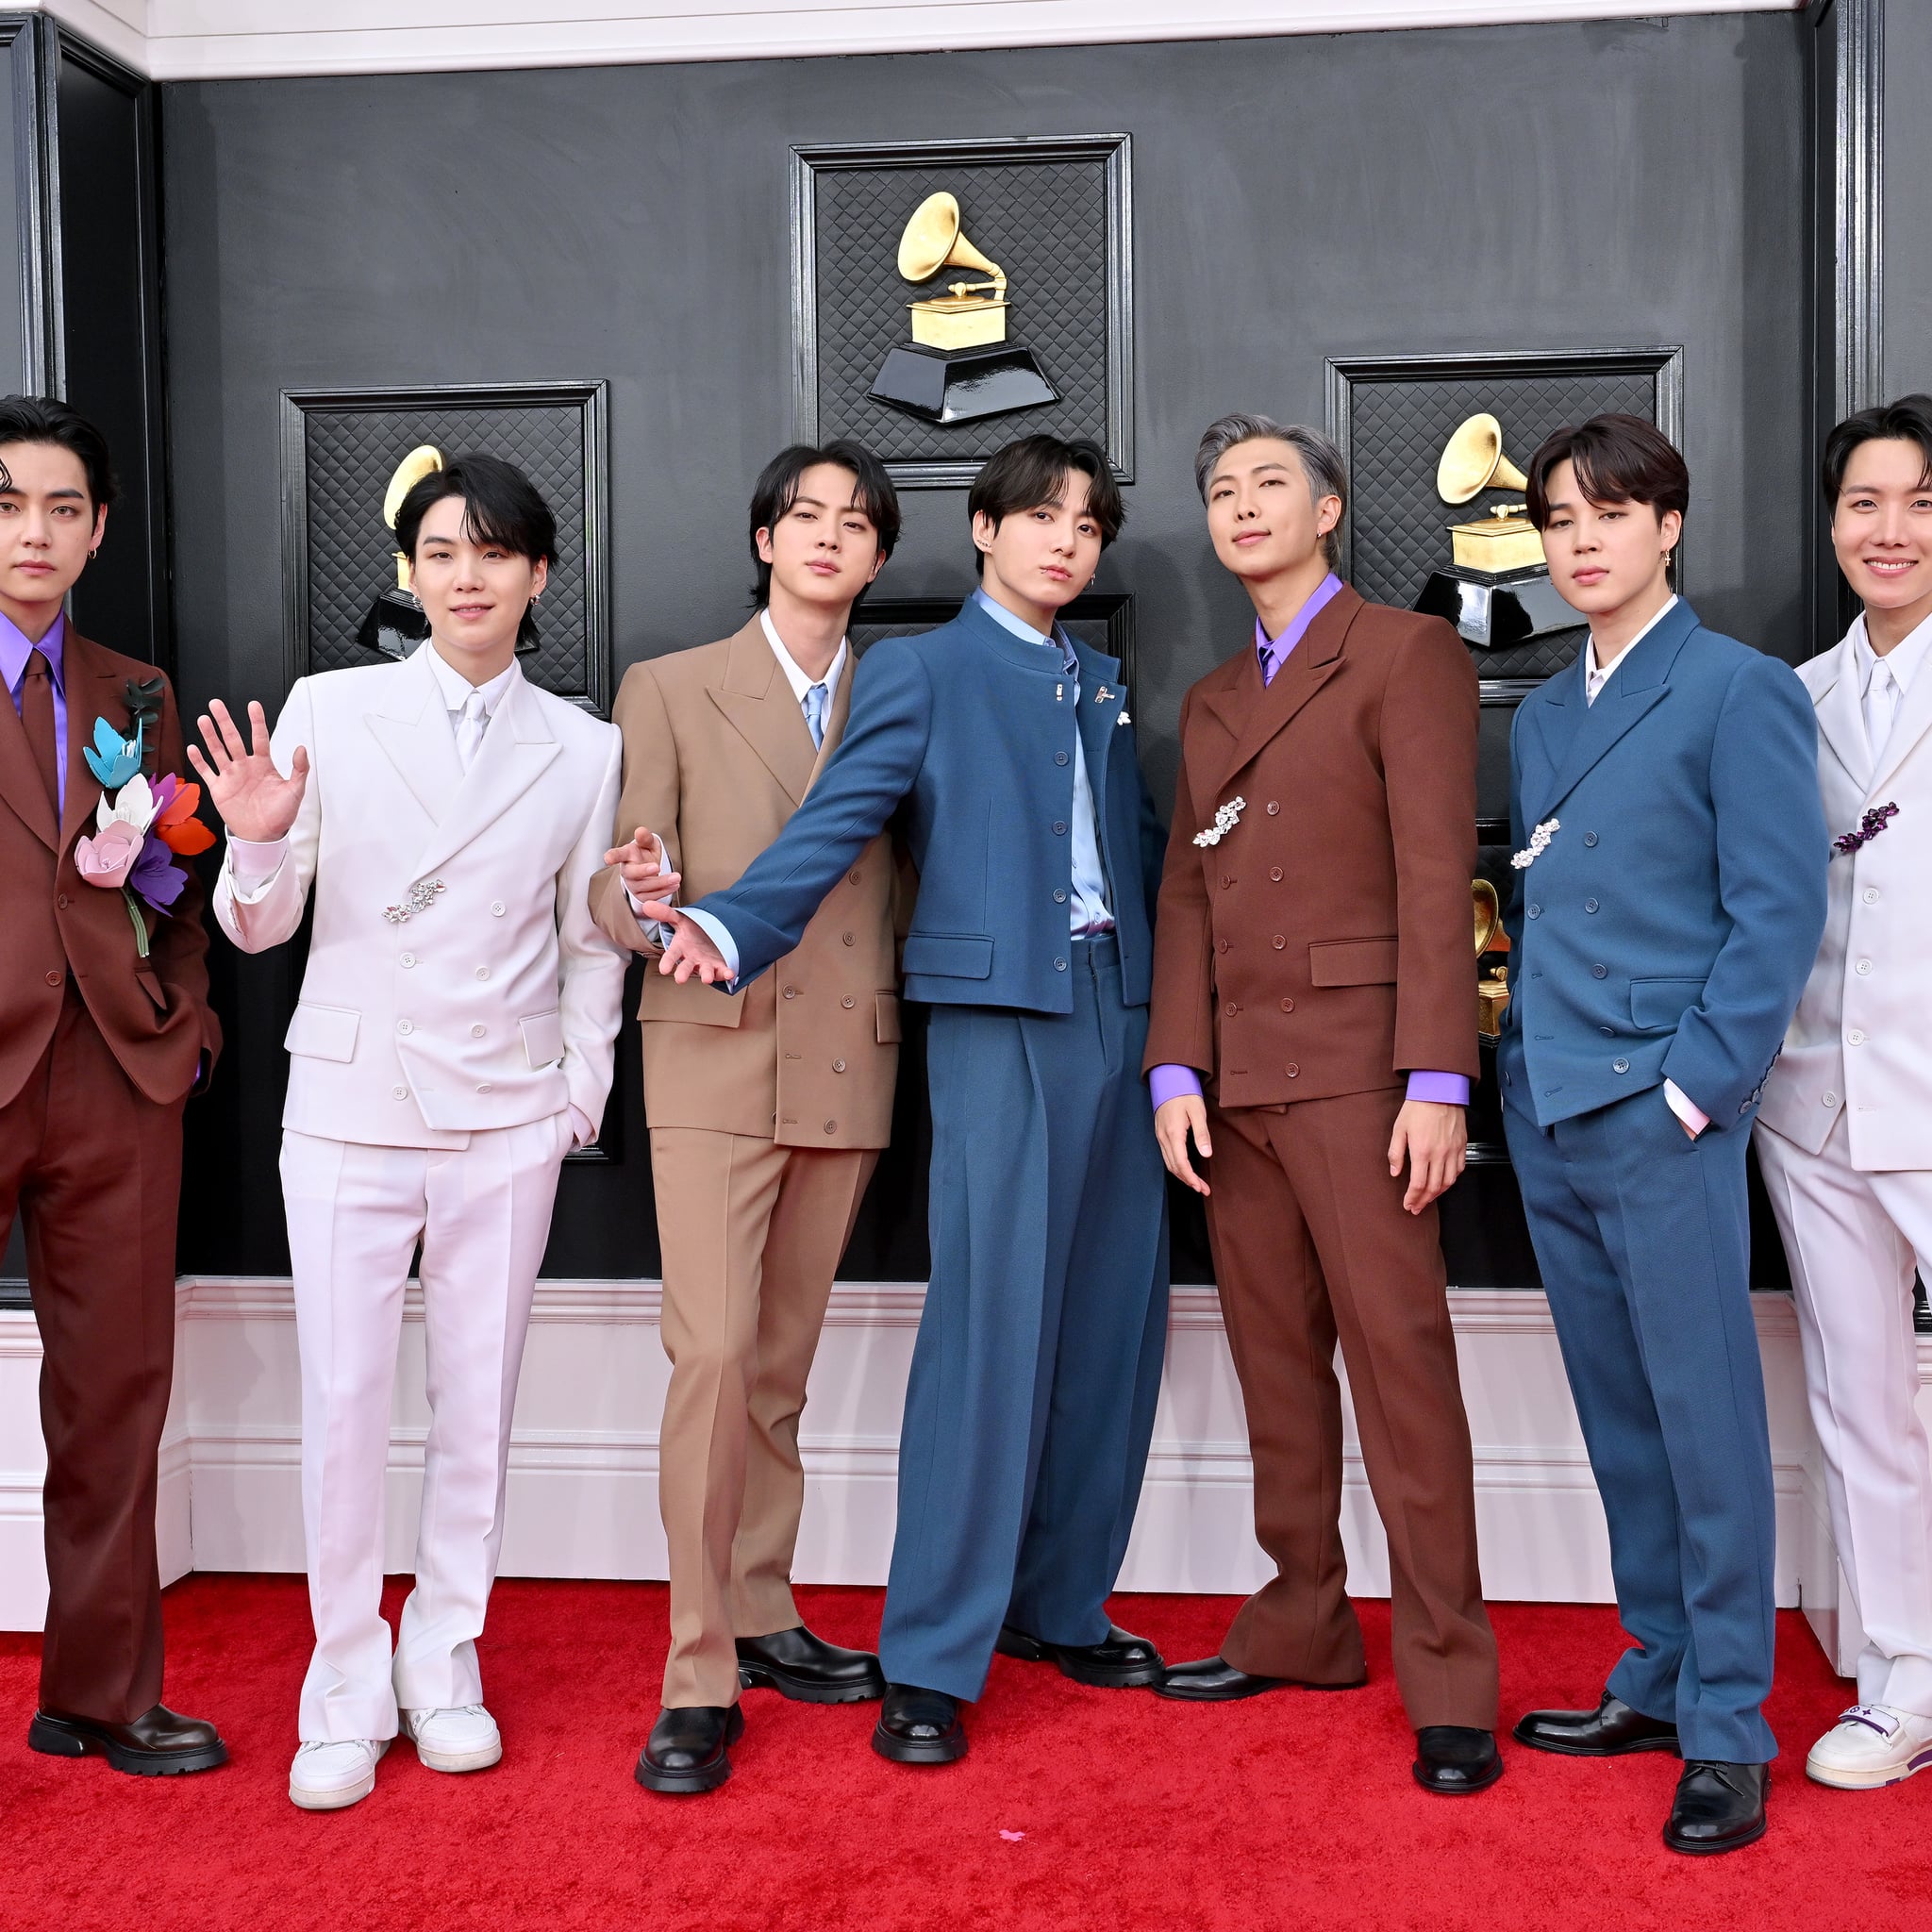 BTS singer Jin once interviewed V on Grammys red carpet after